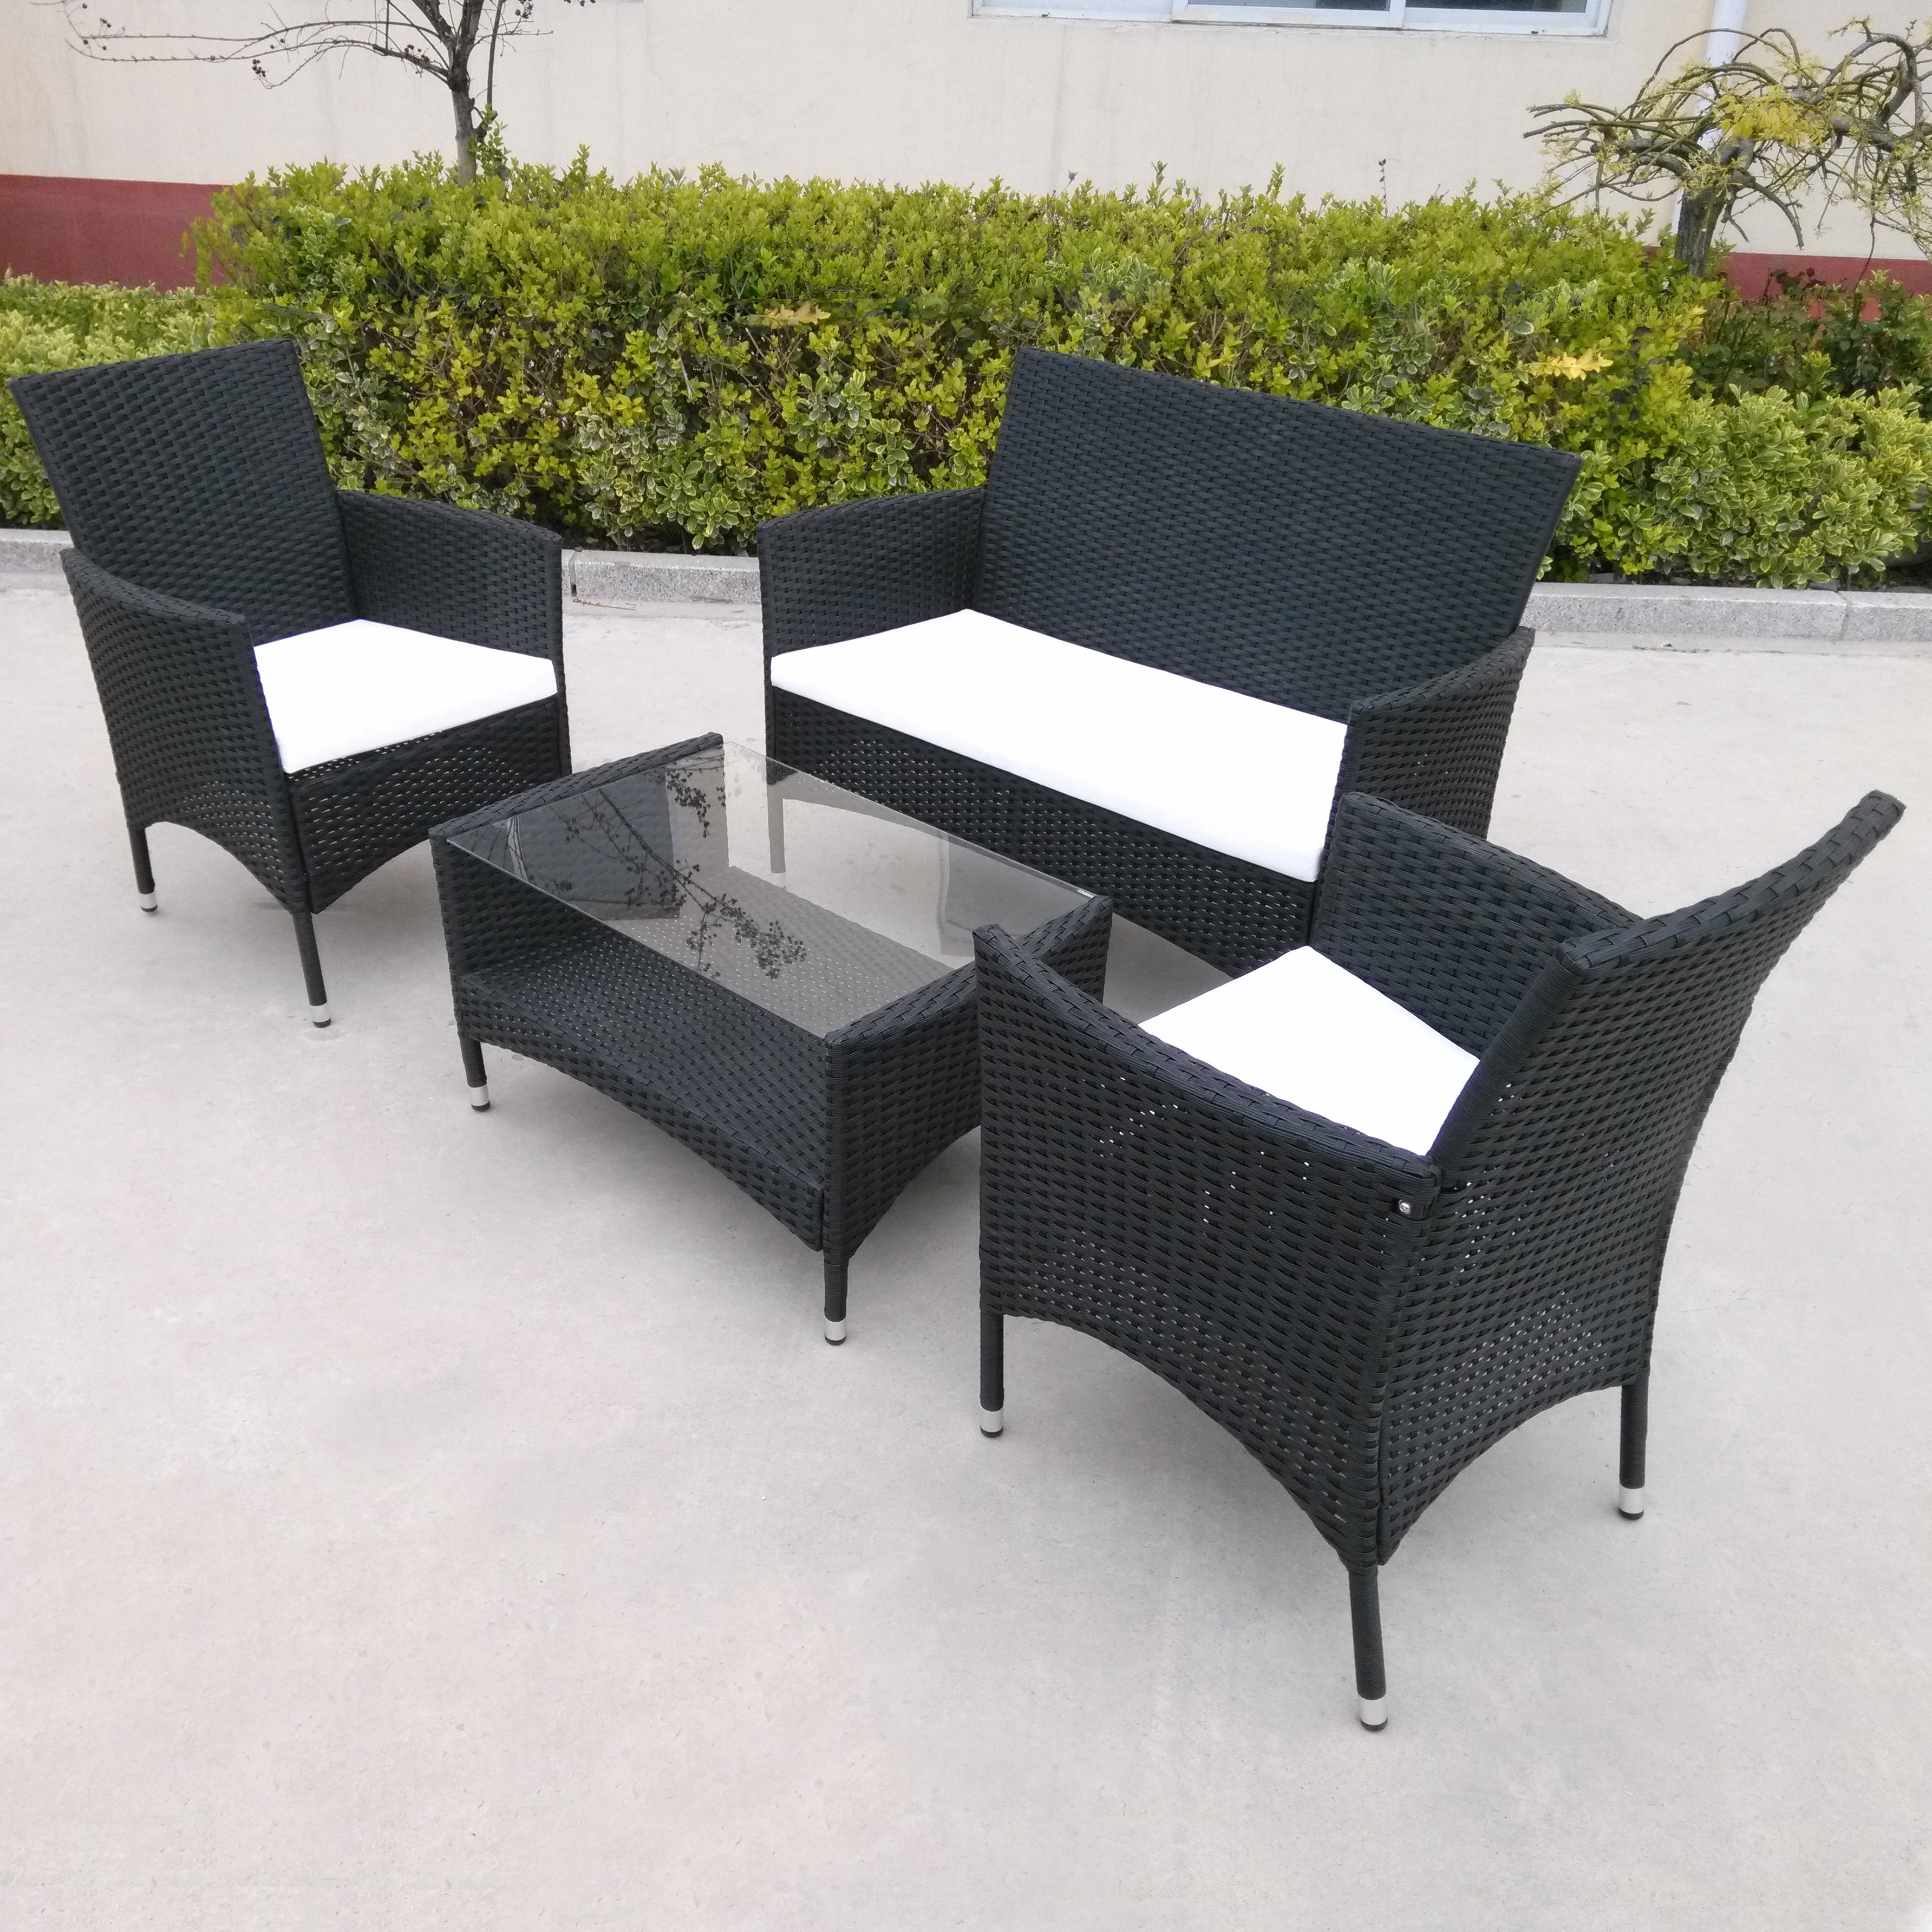 Outdoor coffee rattan furniture